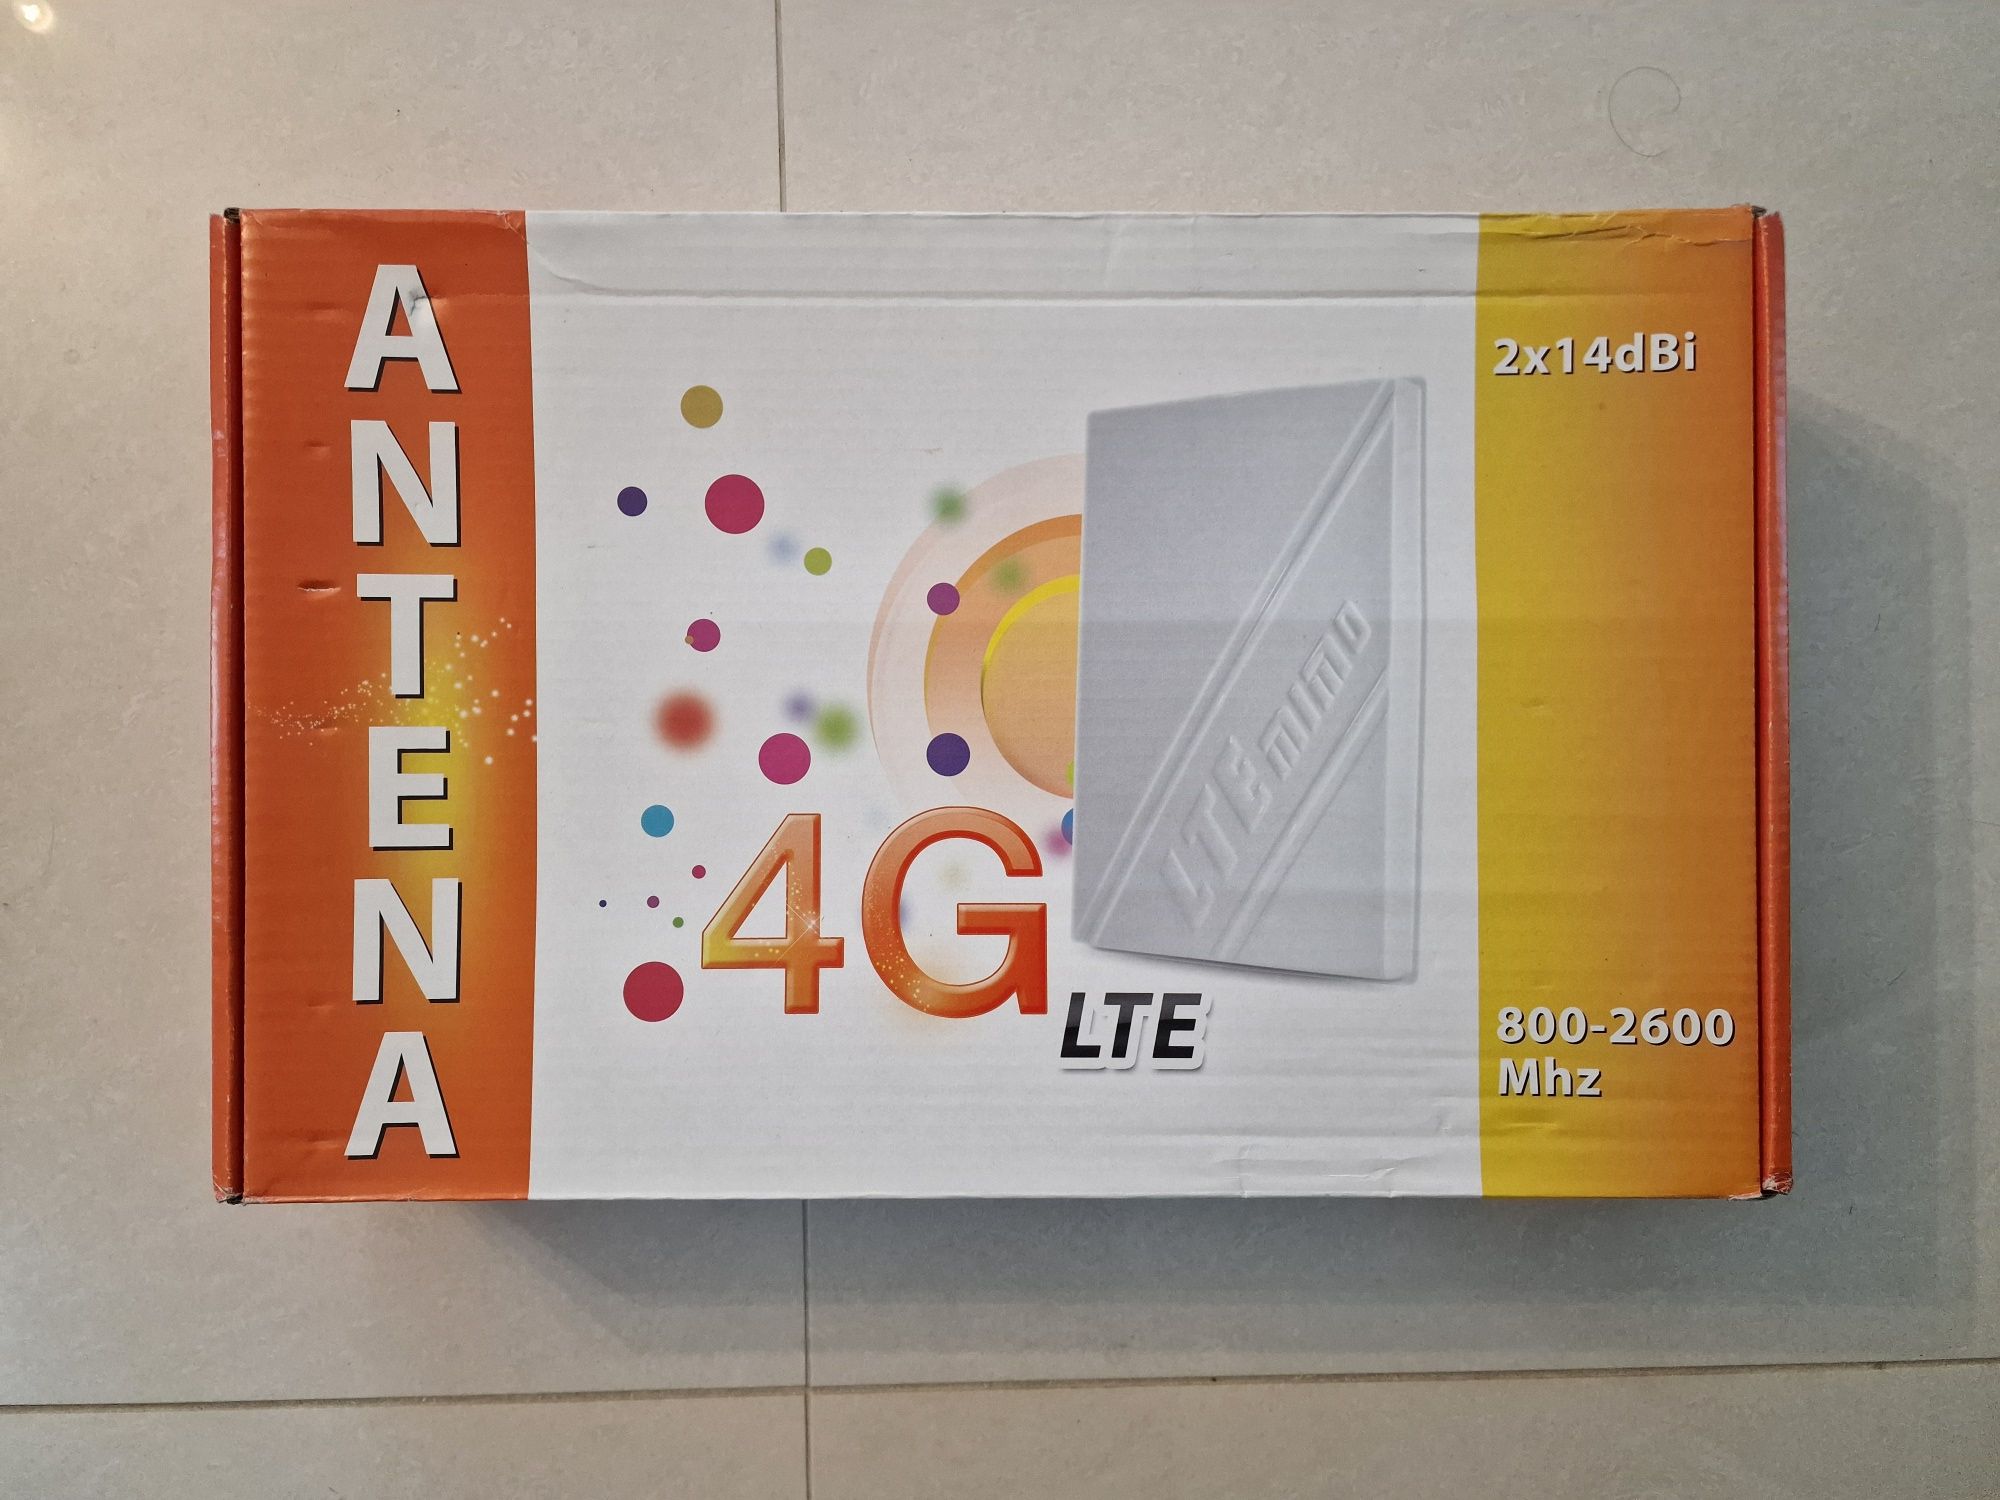 Antena MIMO 6G LTE 2x14dBi